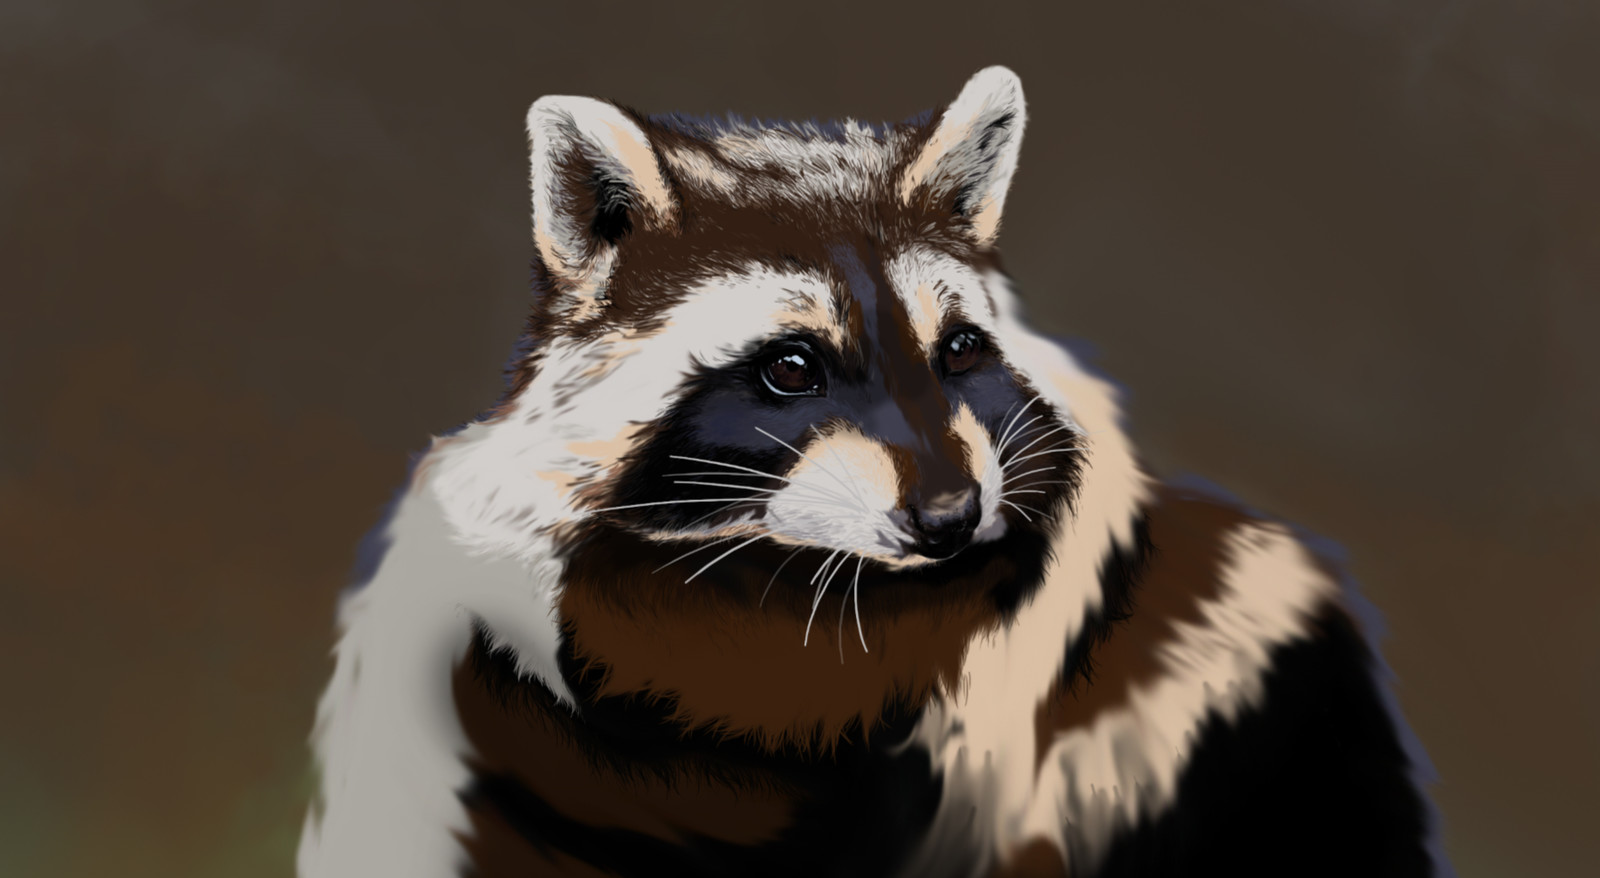 Raccoon close up.